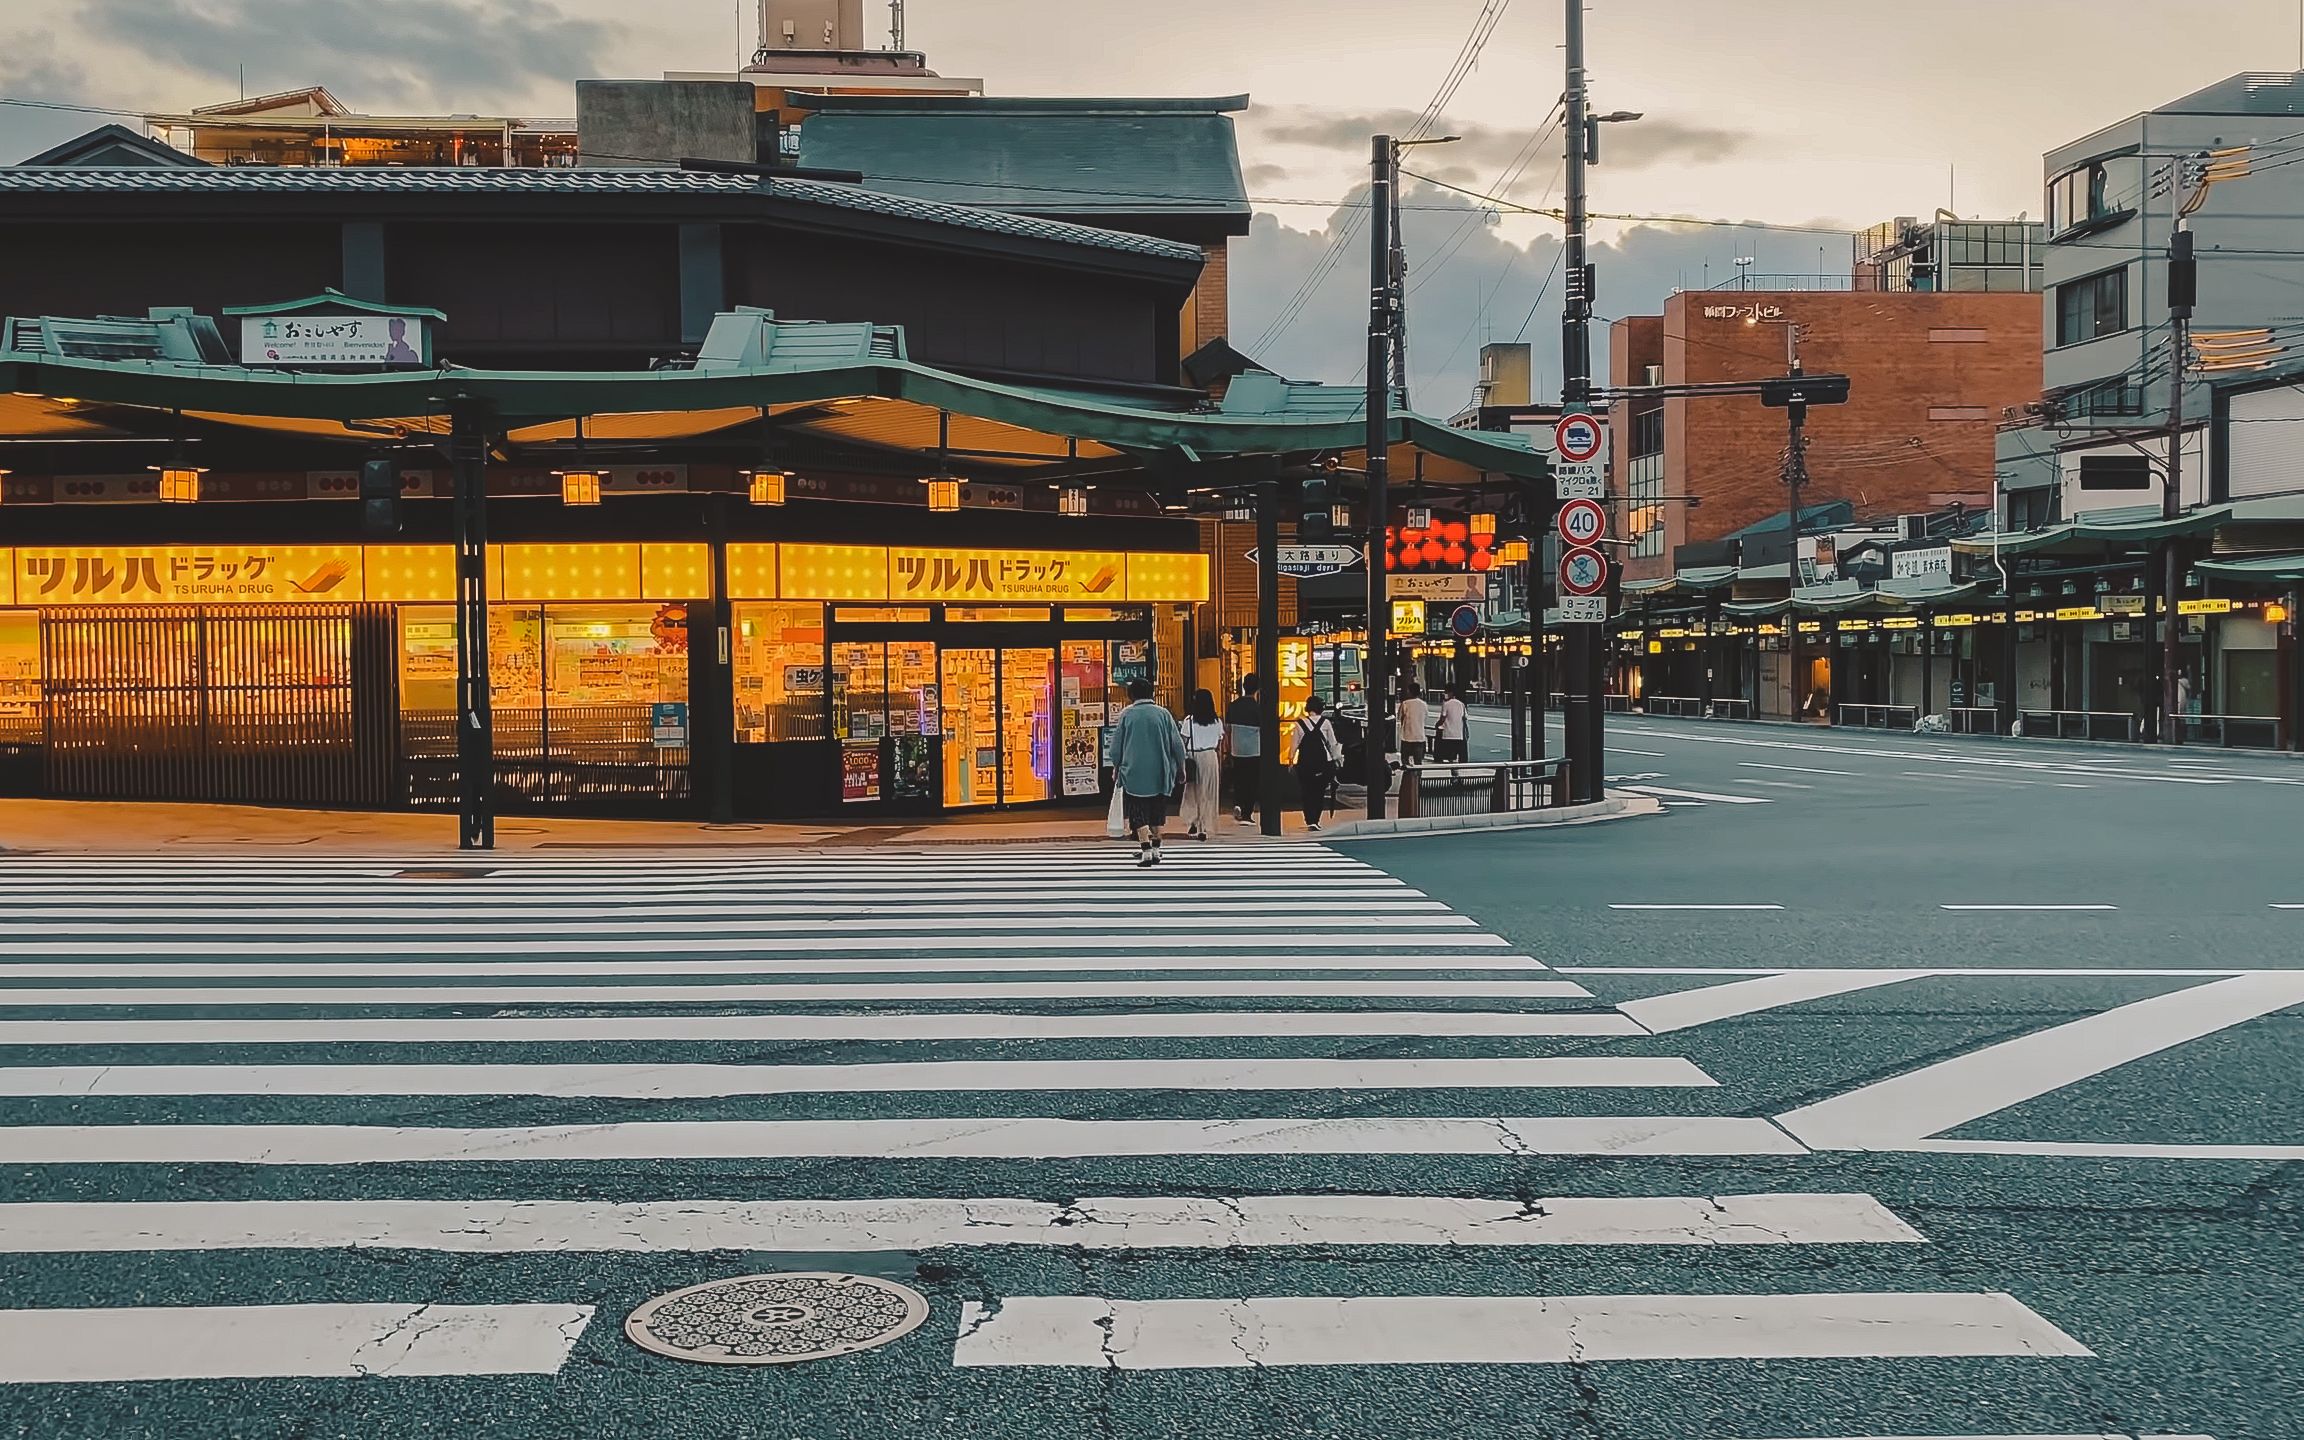 日本风景壁纸街道高清图片